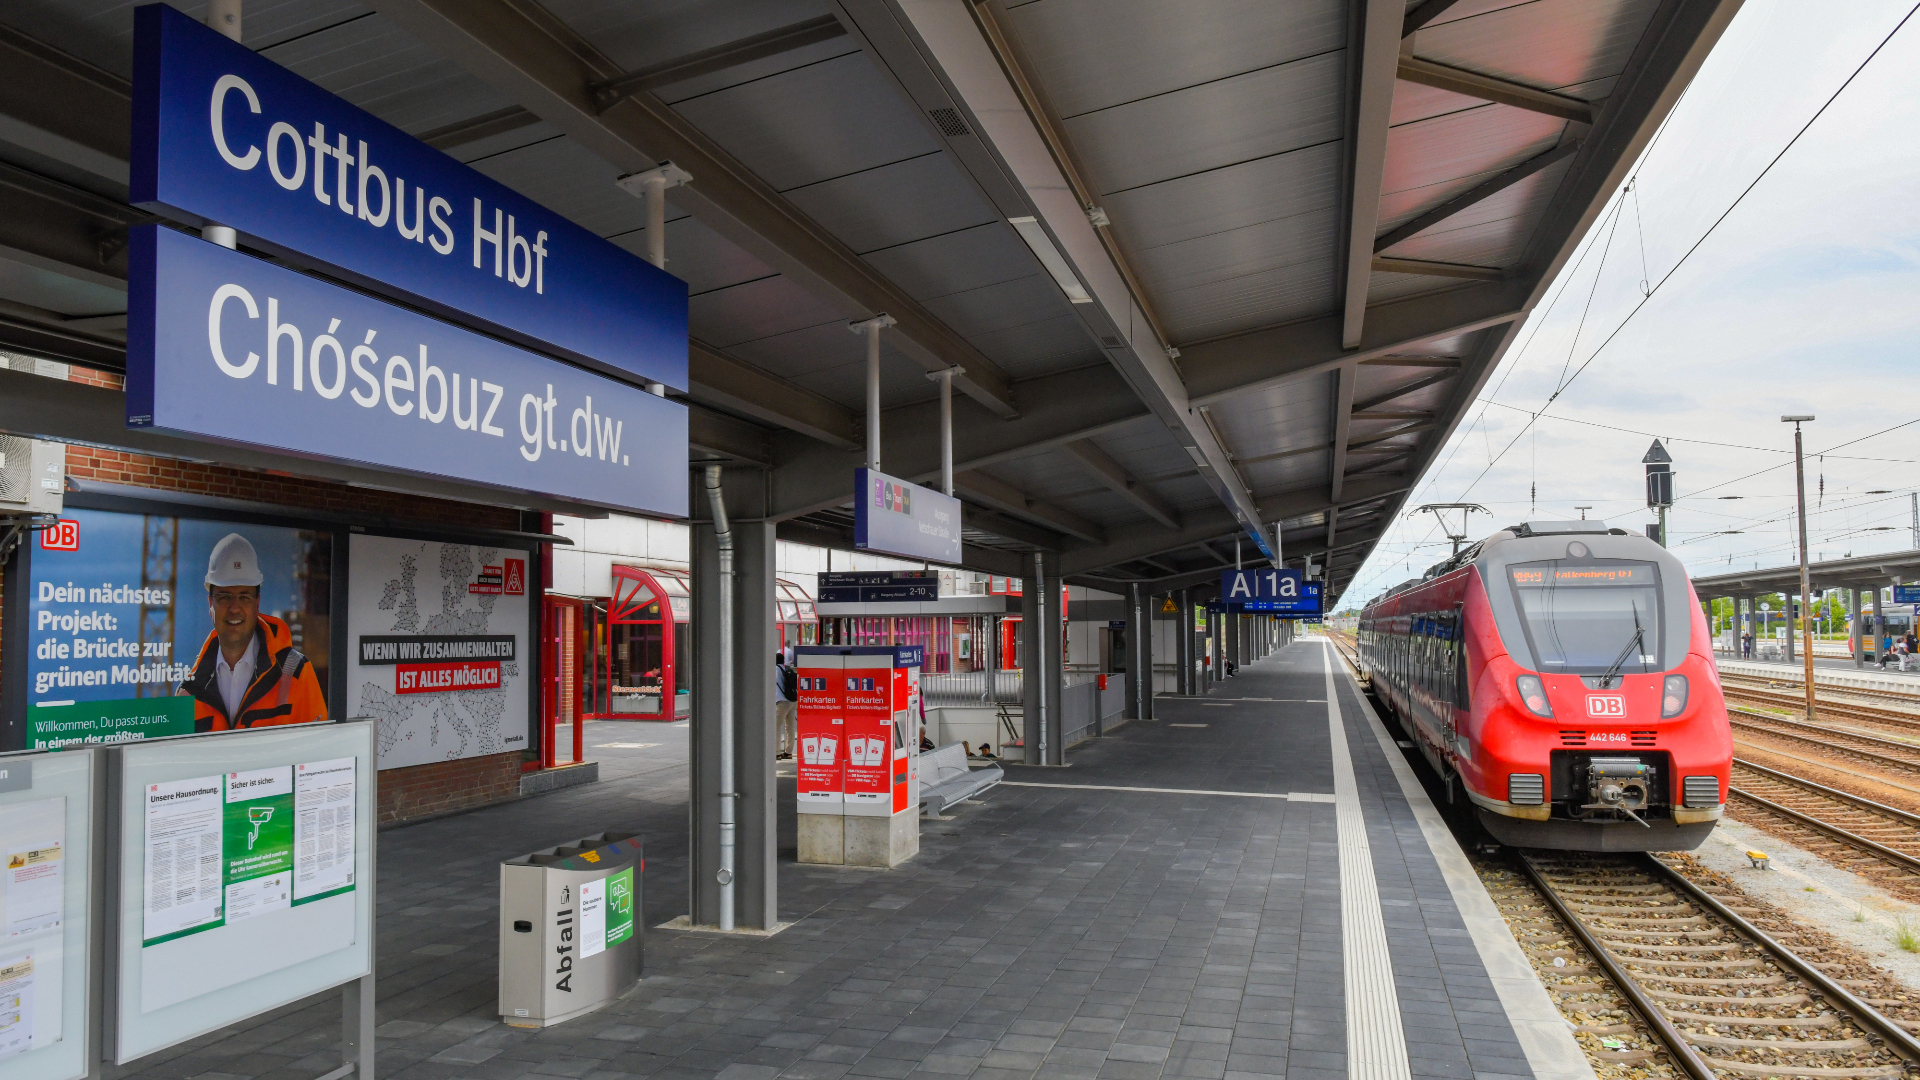 Der sanierte Bahnsteig 1 am Hauptbahnhof Cottbus. Die Bahn hat nach eigenen Angaben rund 30 Millionen Euro in den Umbau des Hauptbahnhofes in Cottbus investiert. (Quelle: Patrick Pleul/dpa)